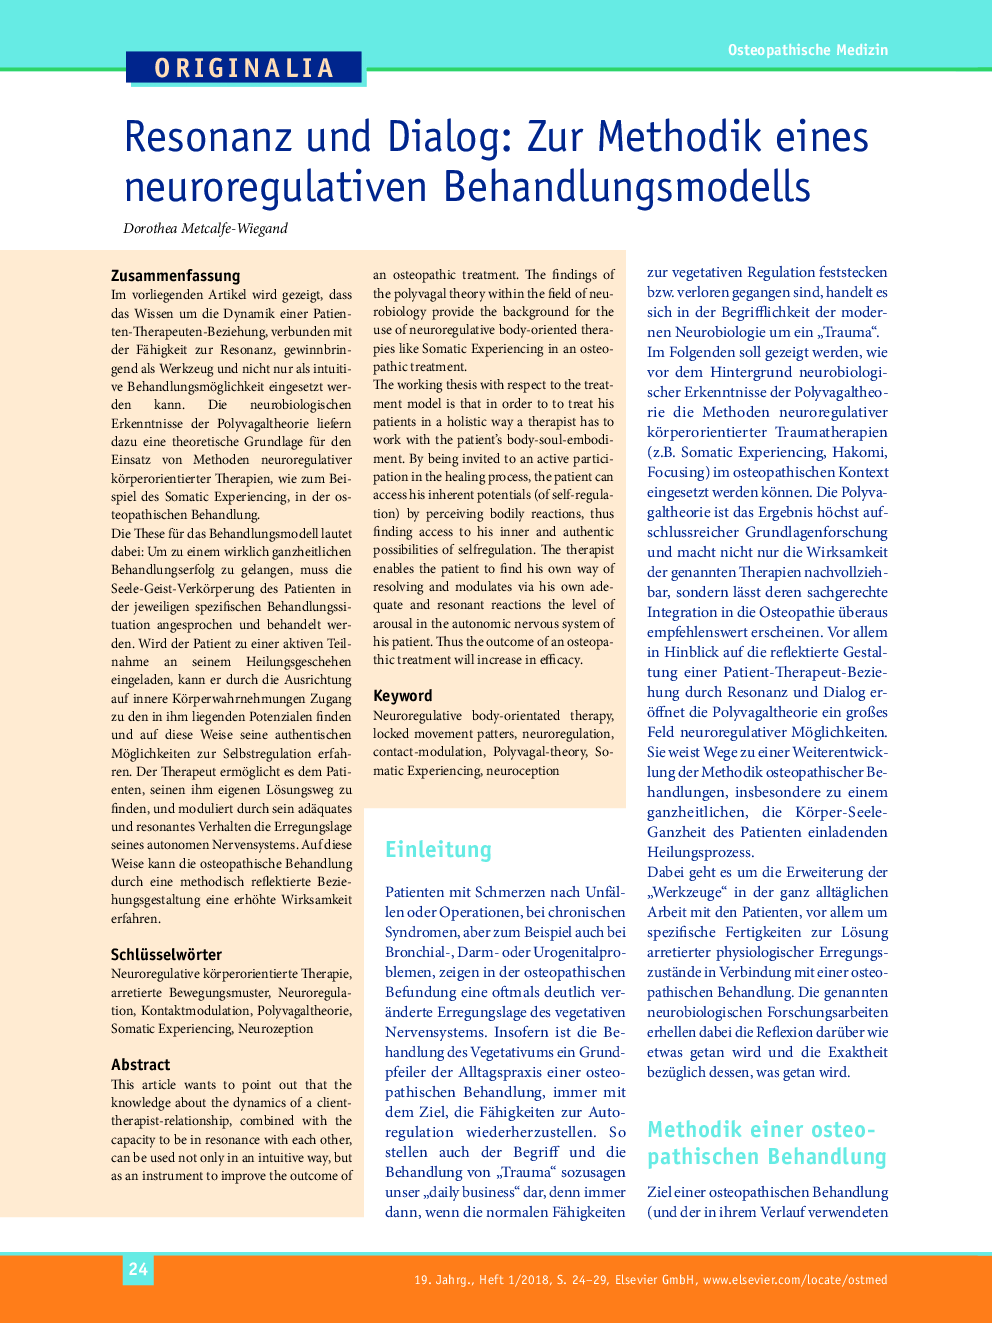 Resonanz und Dialog: Zur Methodik eines neuroregulativen Behandlungsmodells